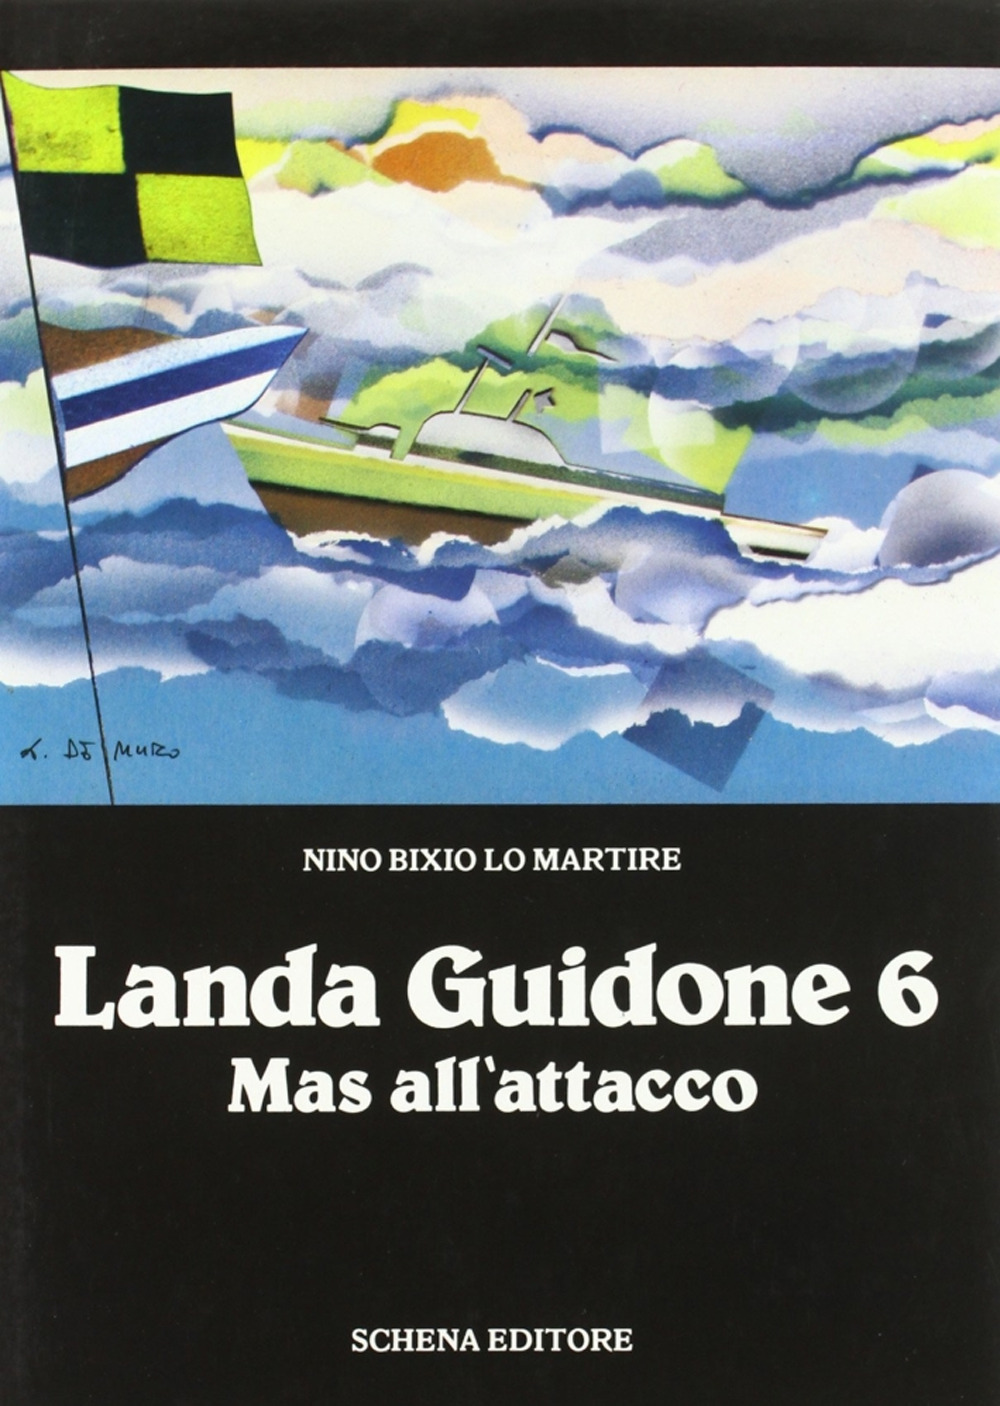 Landa Guidone 6 mas all'attacco